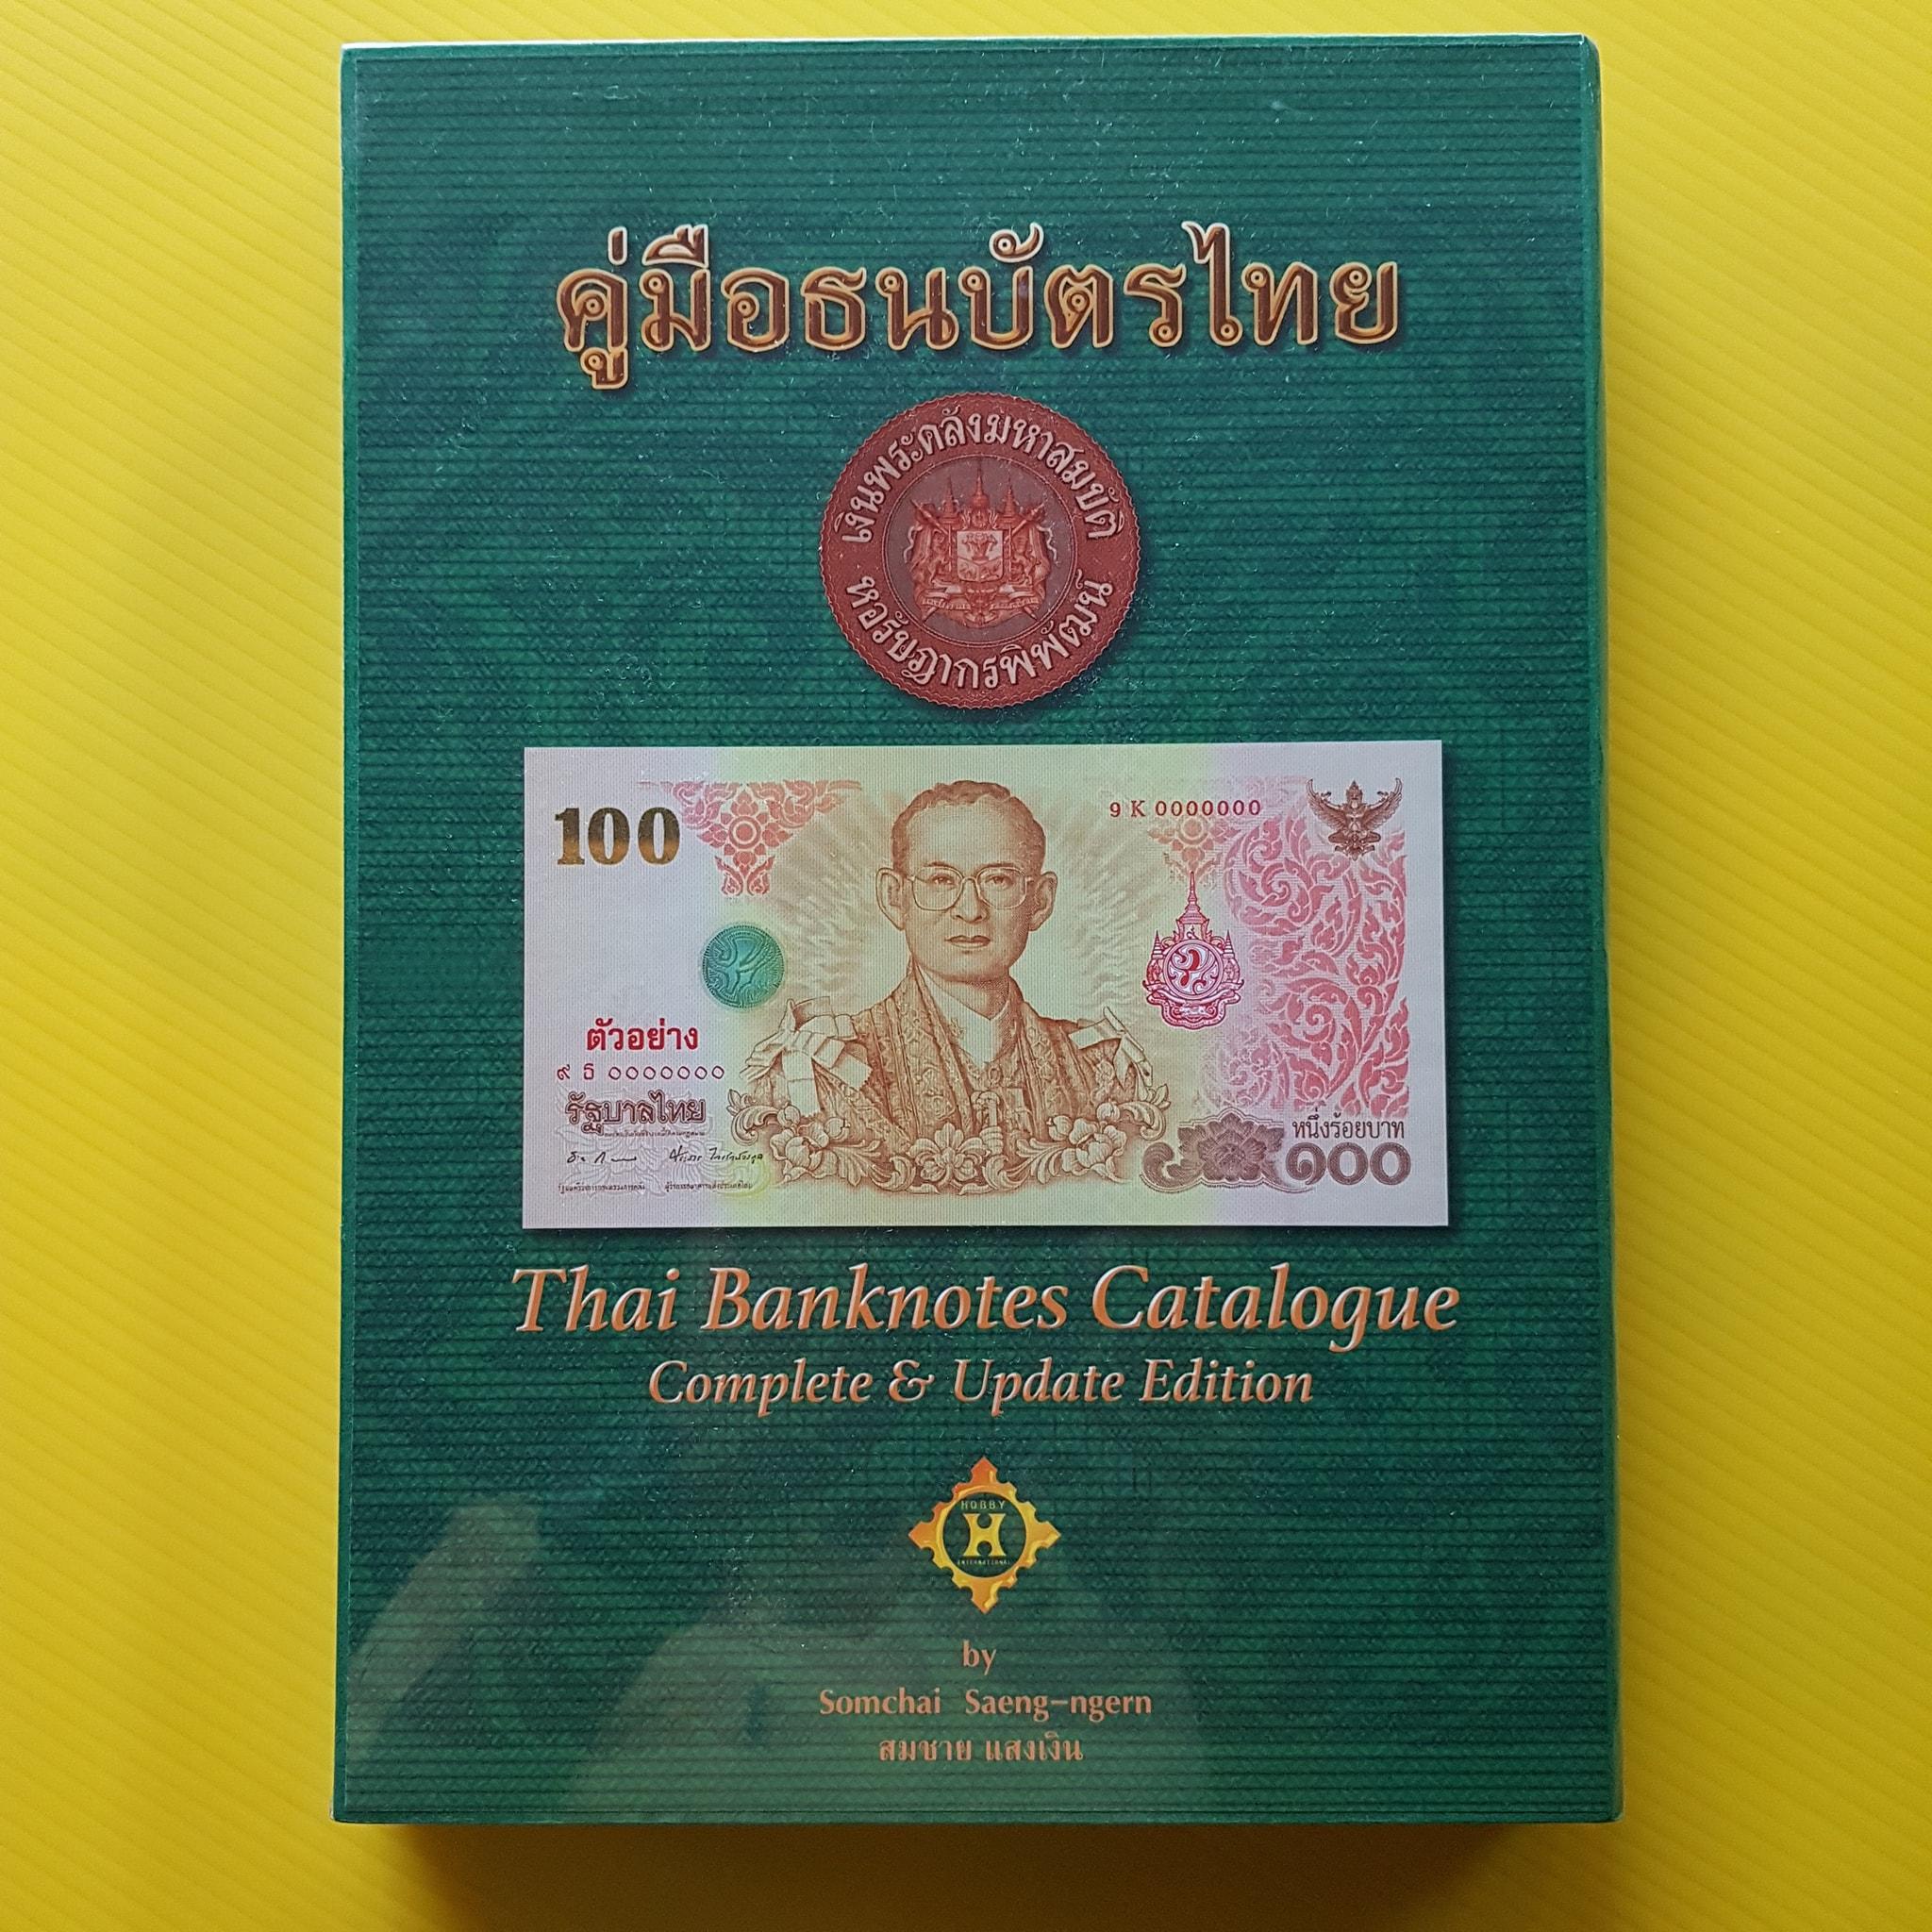 คู่มือธนบัตรไทย Version 4 ปกสีเขียว รุ่น Limited (กล่องใส่คู่มือเป็นกระดาษแข็ง) ไม่ผ่านใช้